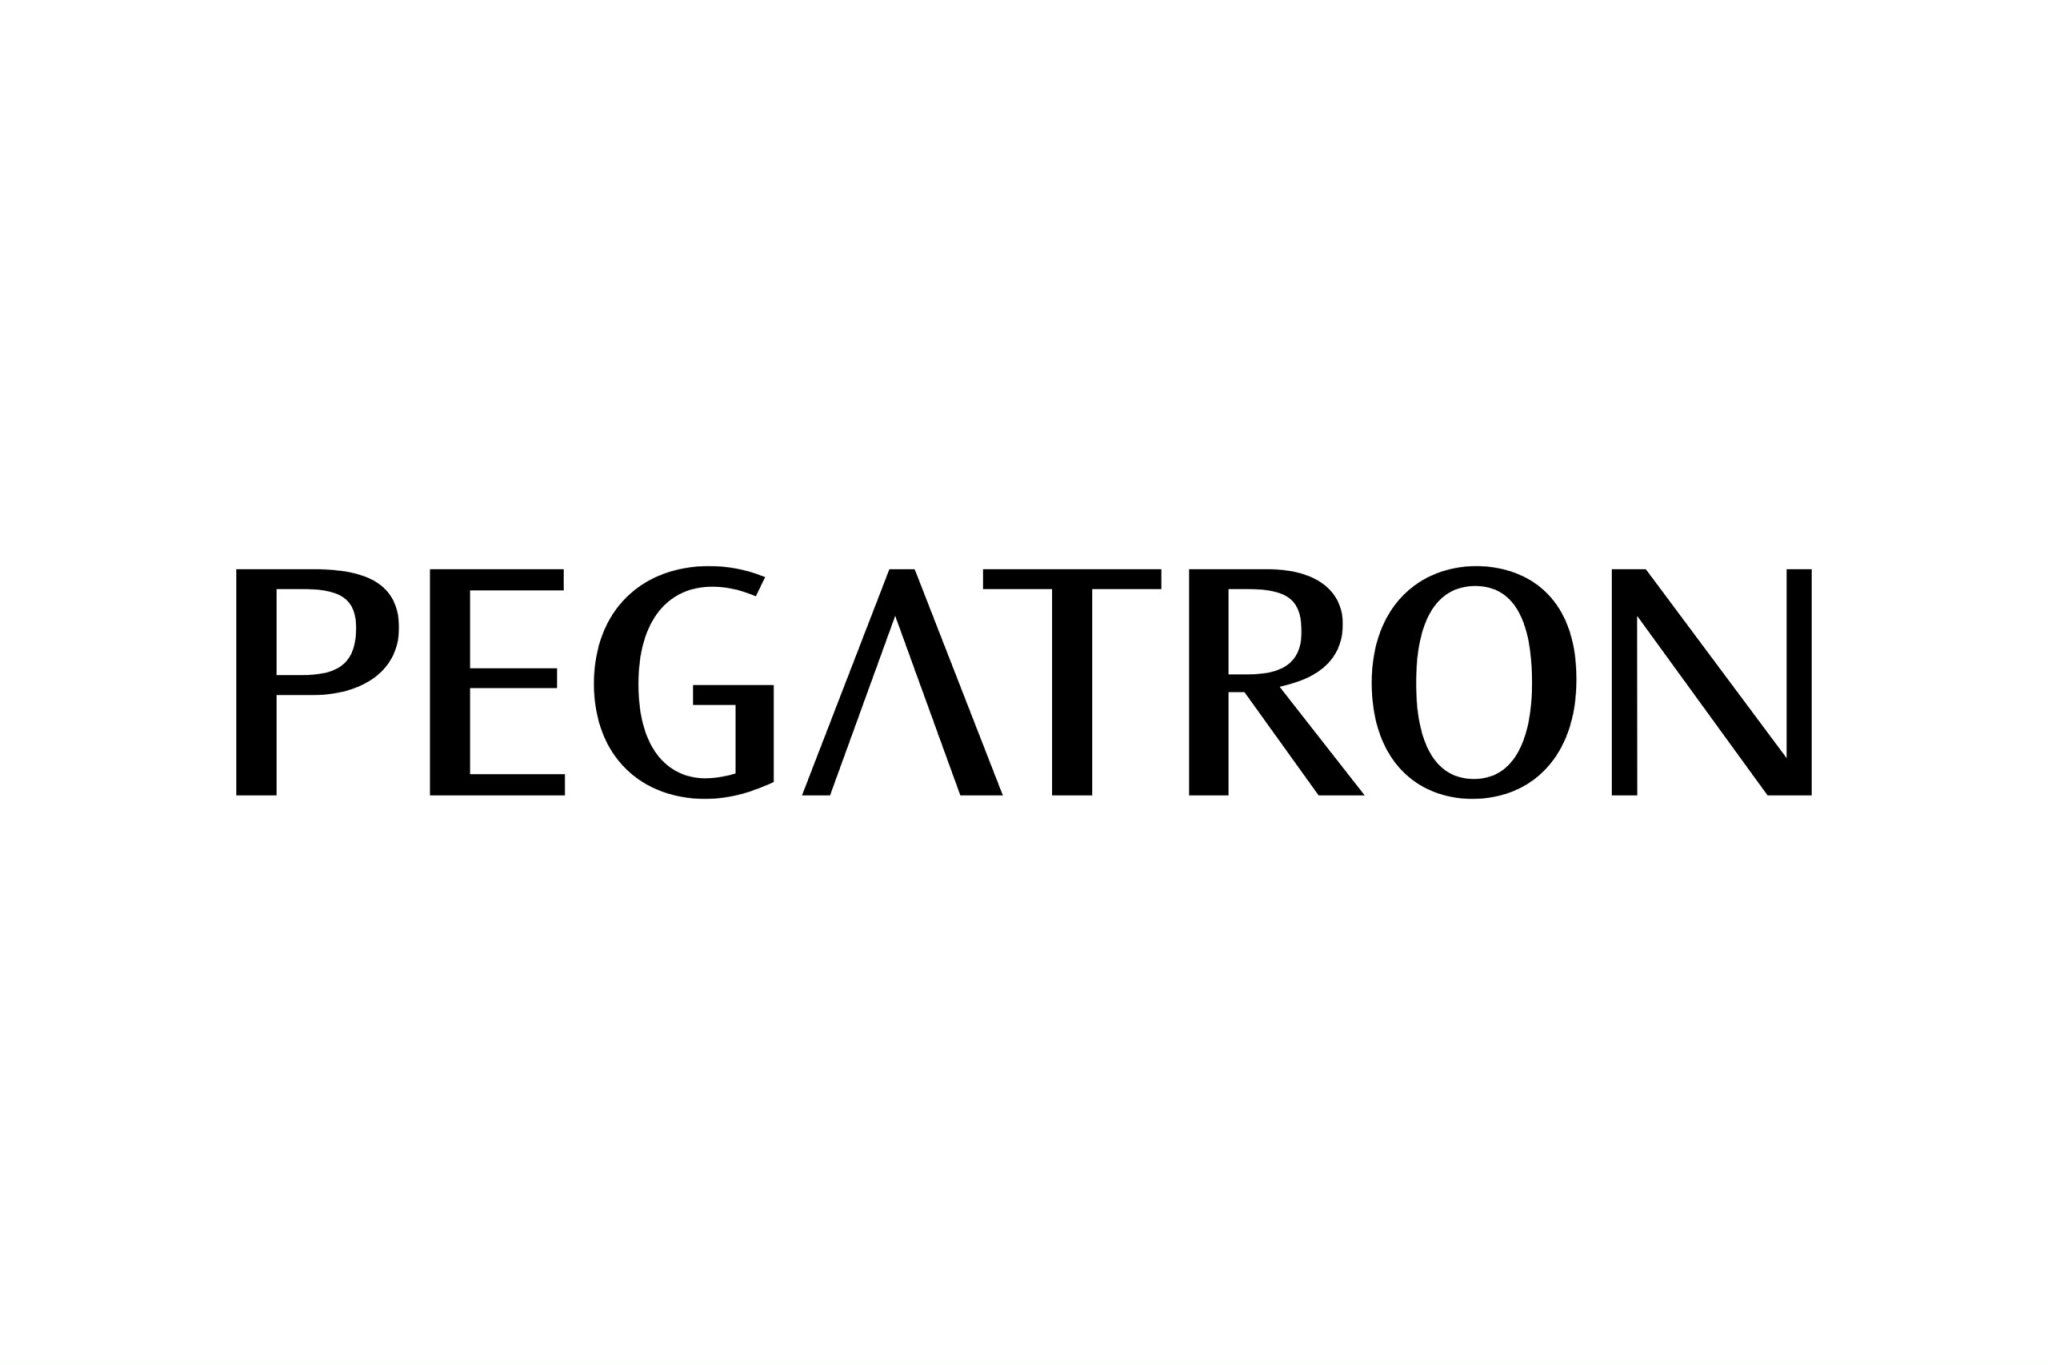 Pegatron